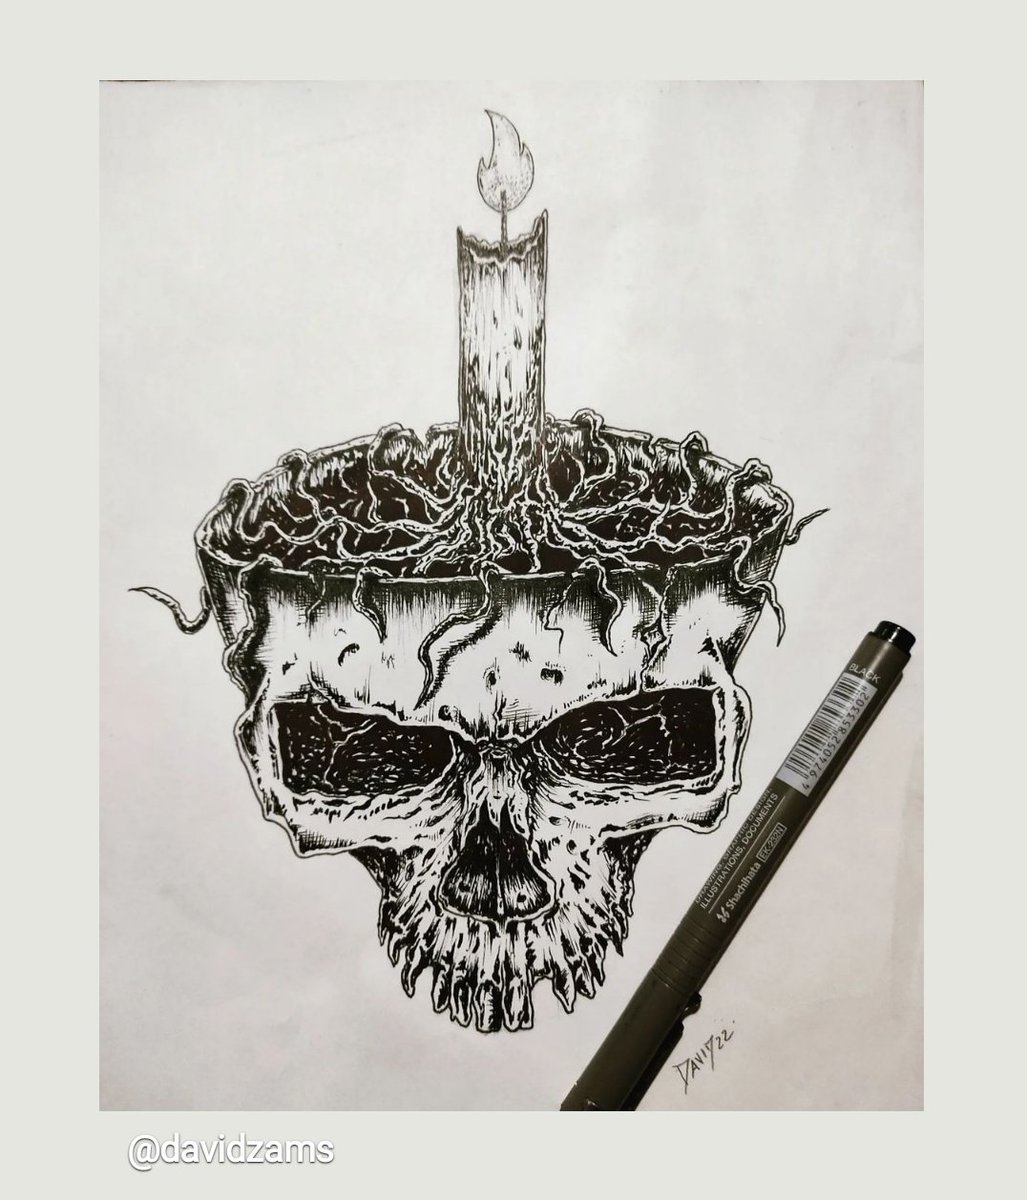 Sketch. 💀🖋️🤘

#craneotattoo #craneo #Skull #Skullart #skullartwork #pendrawing #sketchbook #skulltattoo #darkart #dark #ilustracion #ilustration #blackart #blackdrawing #horrorart